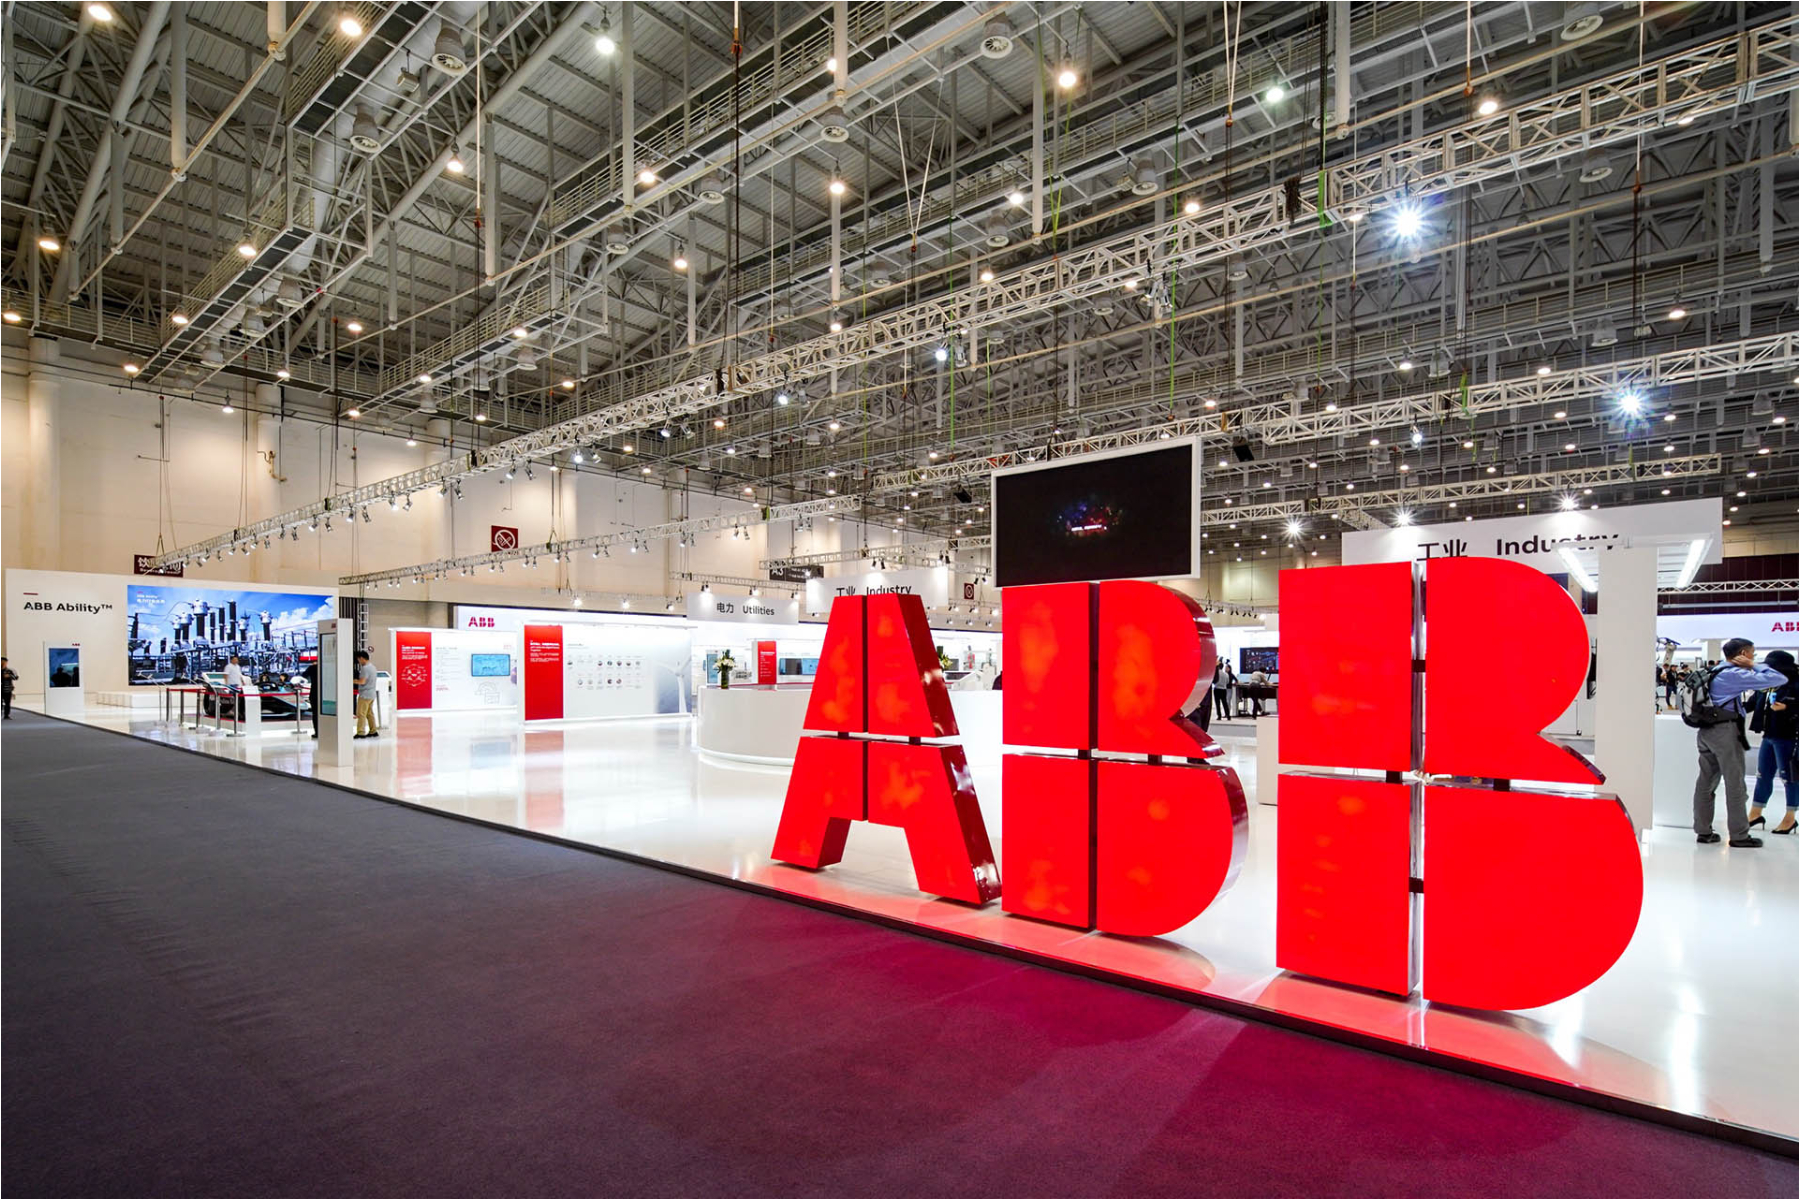 ABB publica vacantes de trabajo para ingenieros y otros profesionales